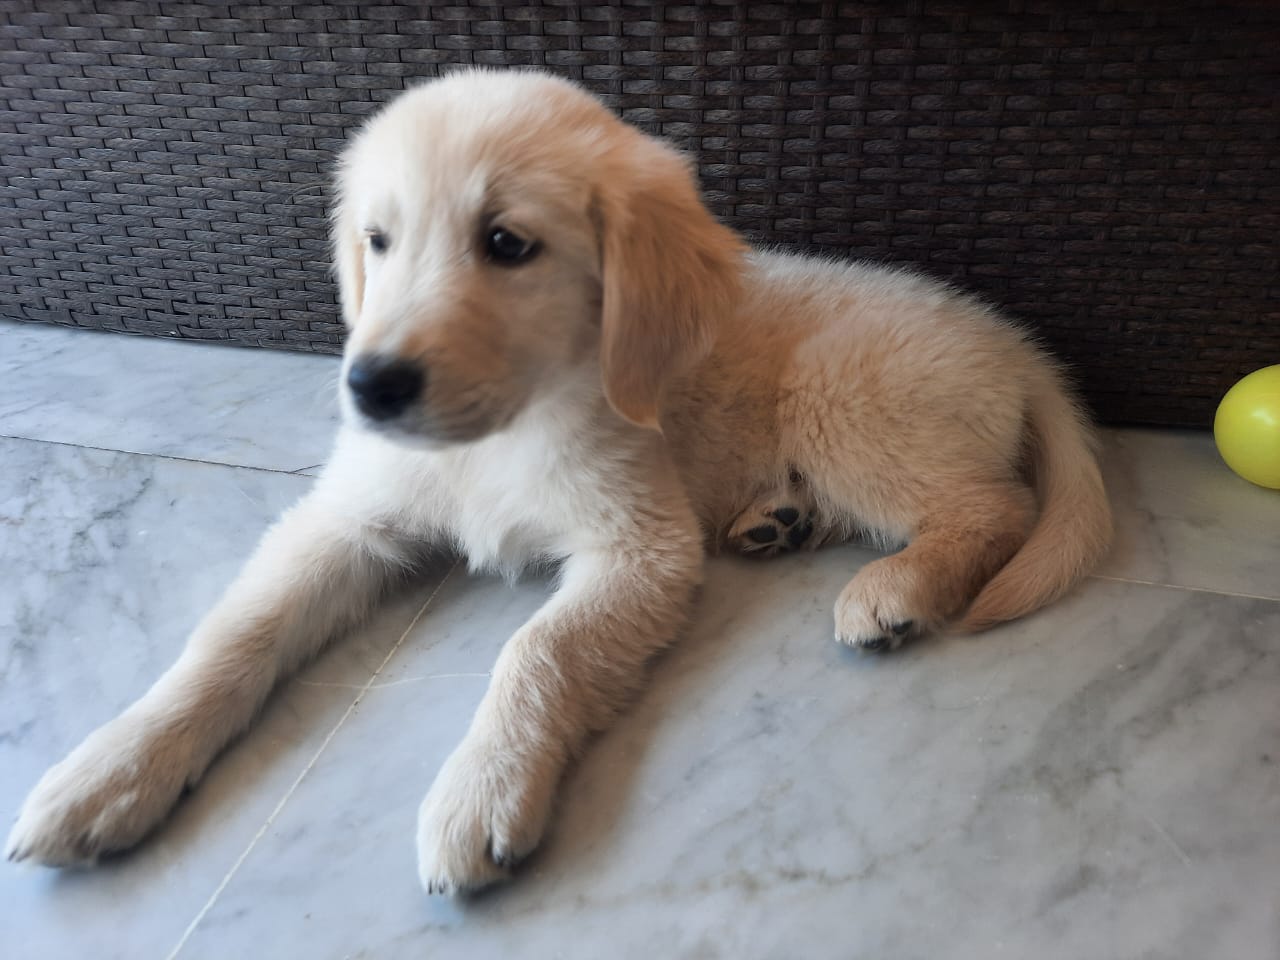 Dog in Lebanon: Golden retriever for sale